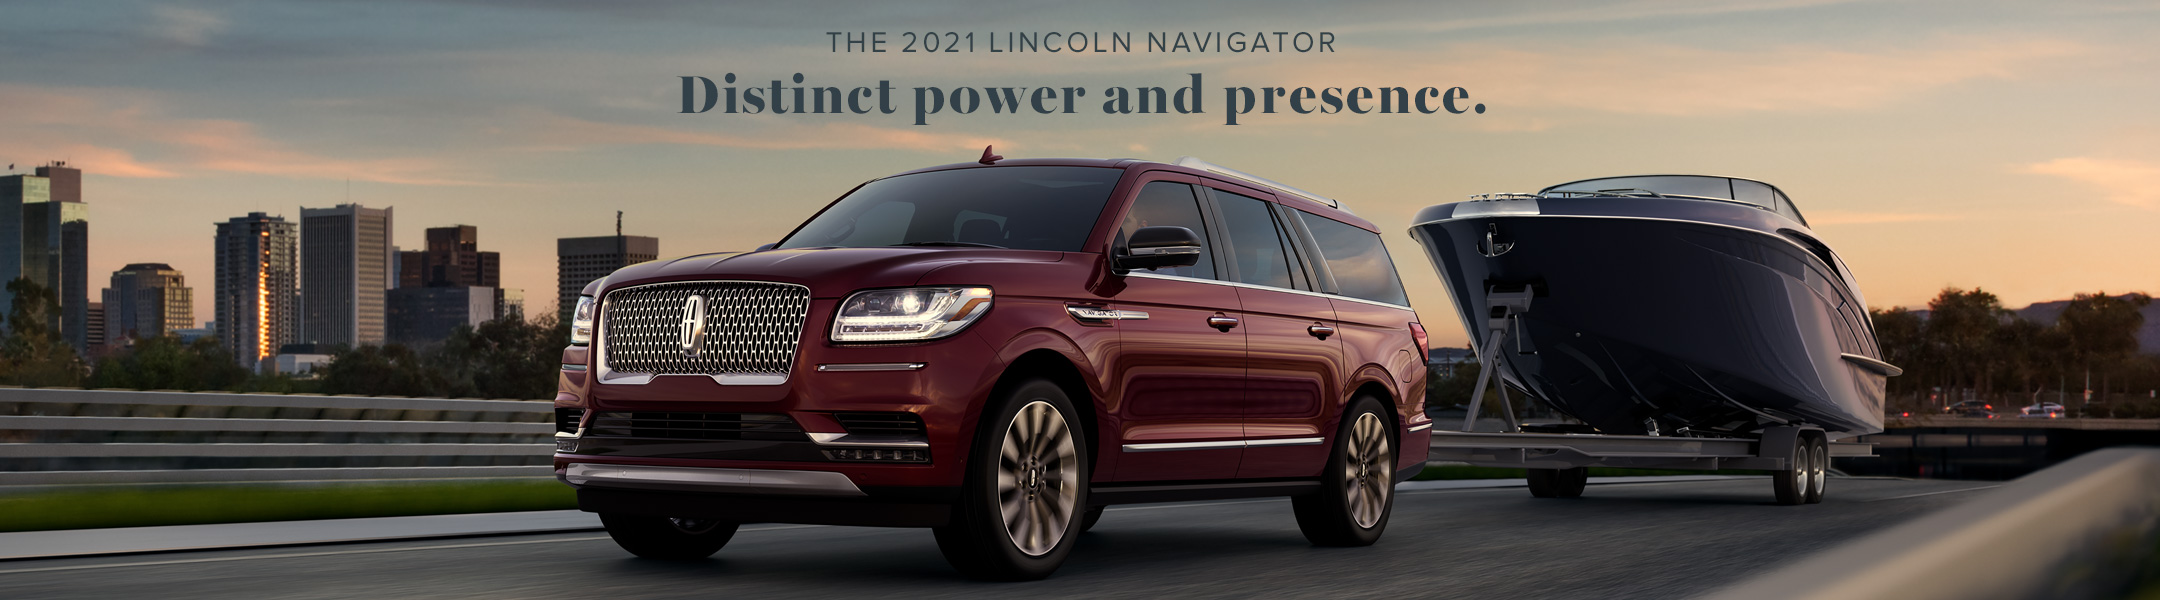 2021 Lincoln Navigator